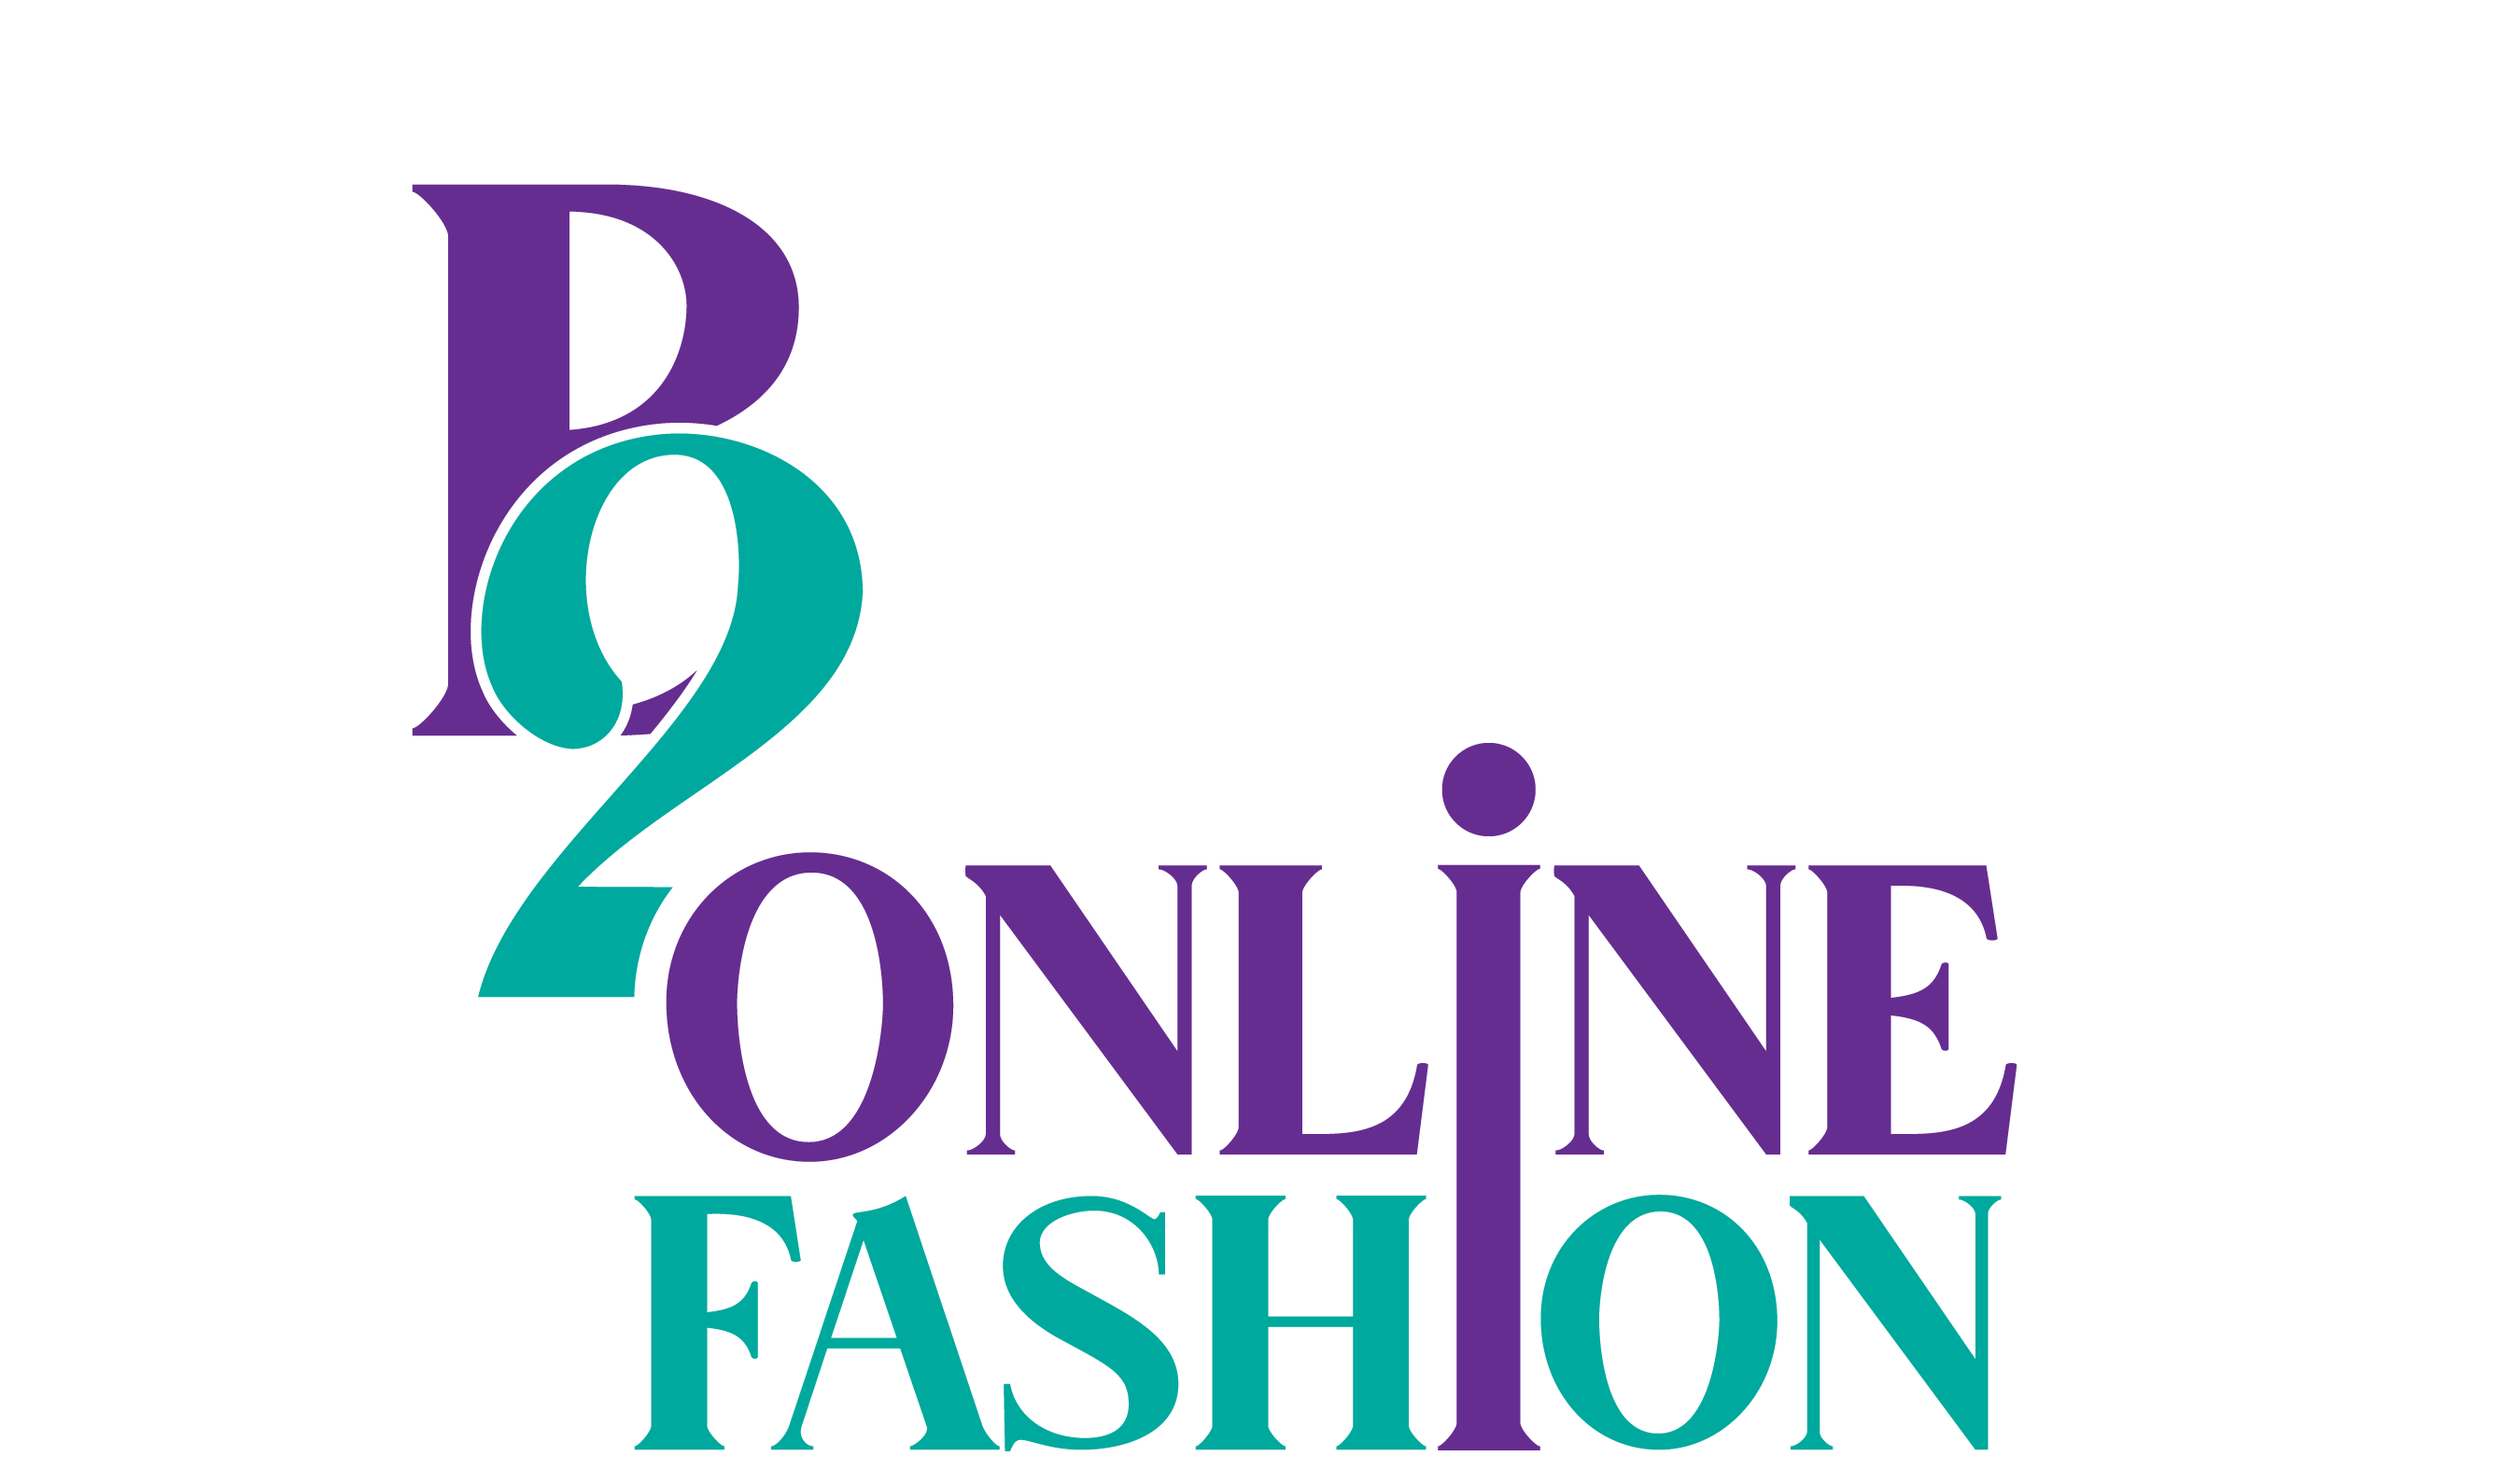 B20nline Fashion Store